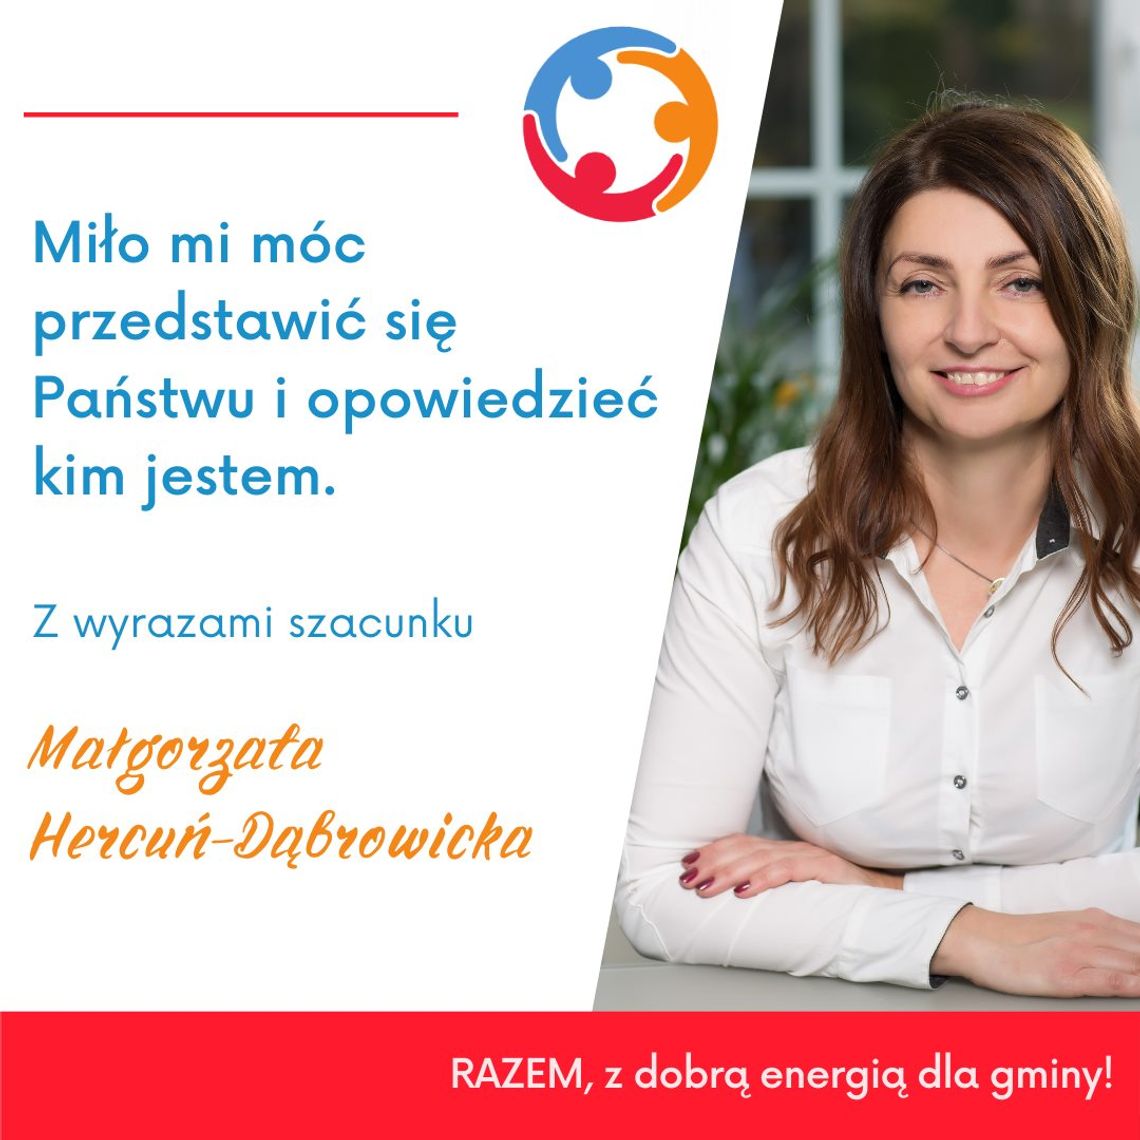 Małgorzata Hercuń-Dąbrowicka - Oto moja historia